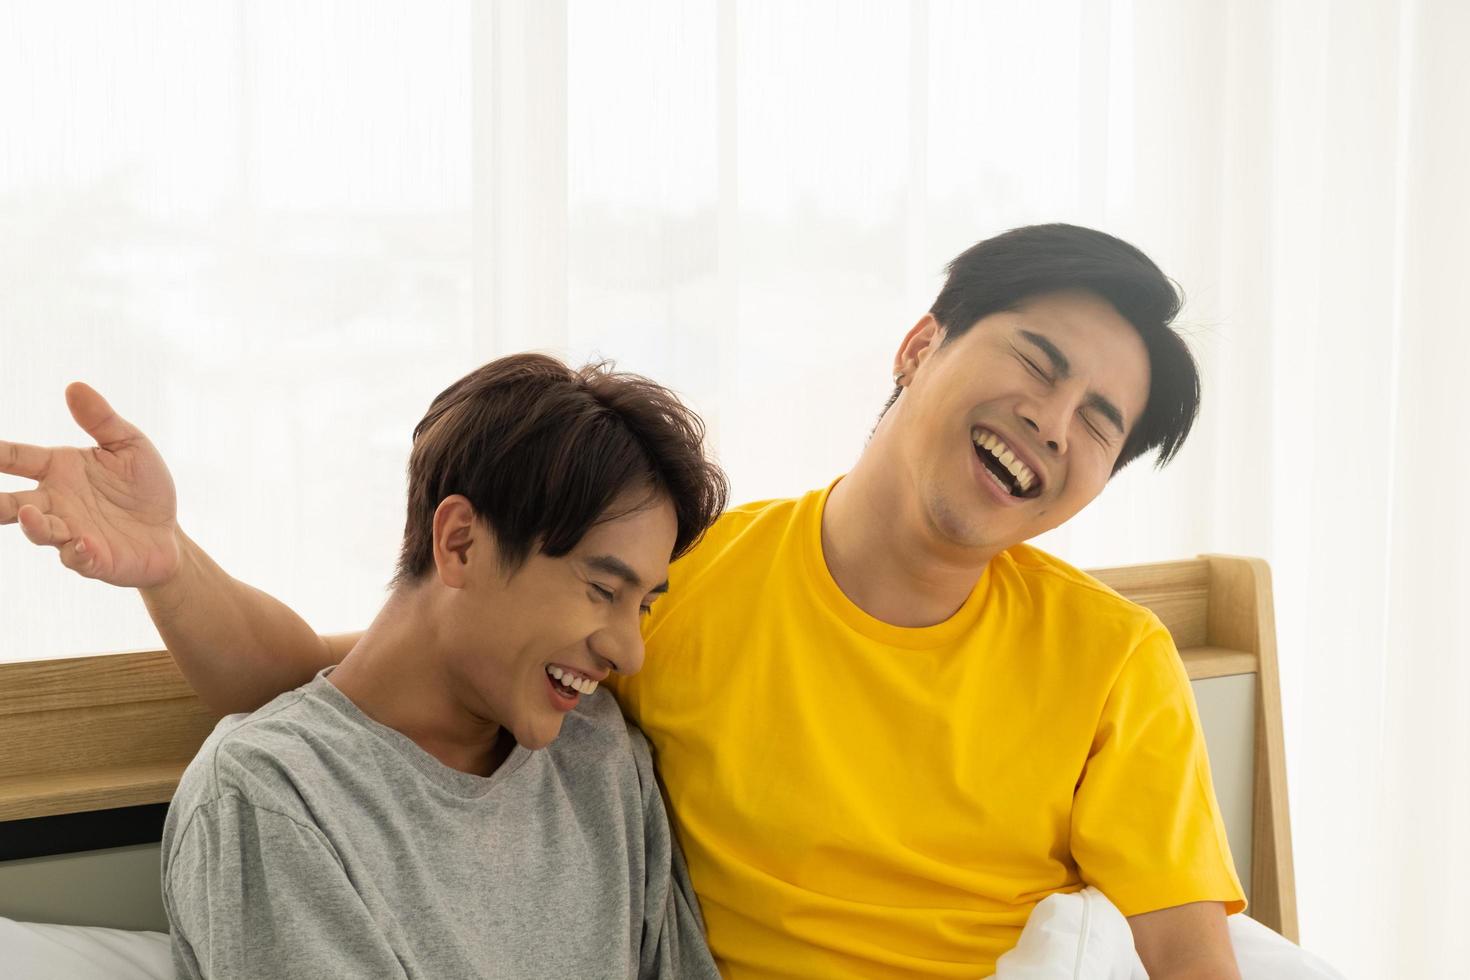 coppia omosessuale gay asiatica si abbraccia e si abbraccia sul letto. uguaglianza di genere e giusto concetto, momento giocoso e romantico. foto